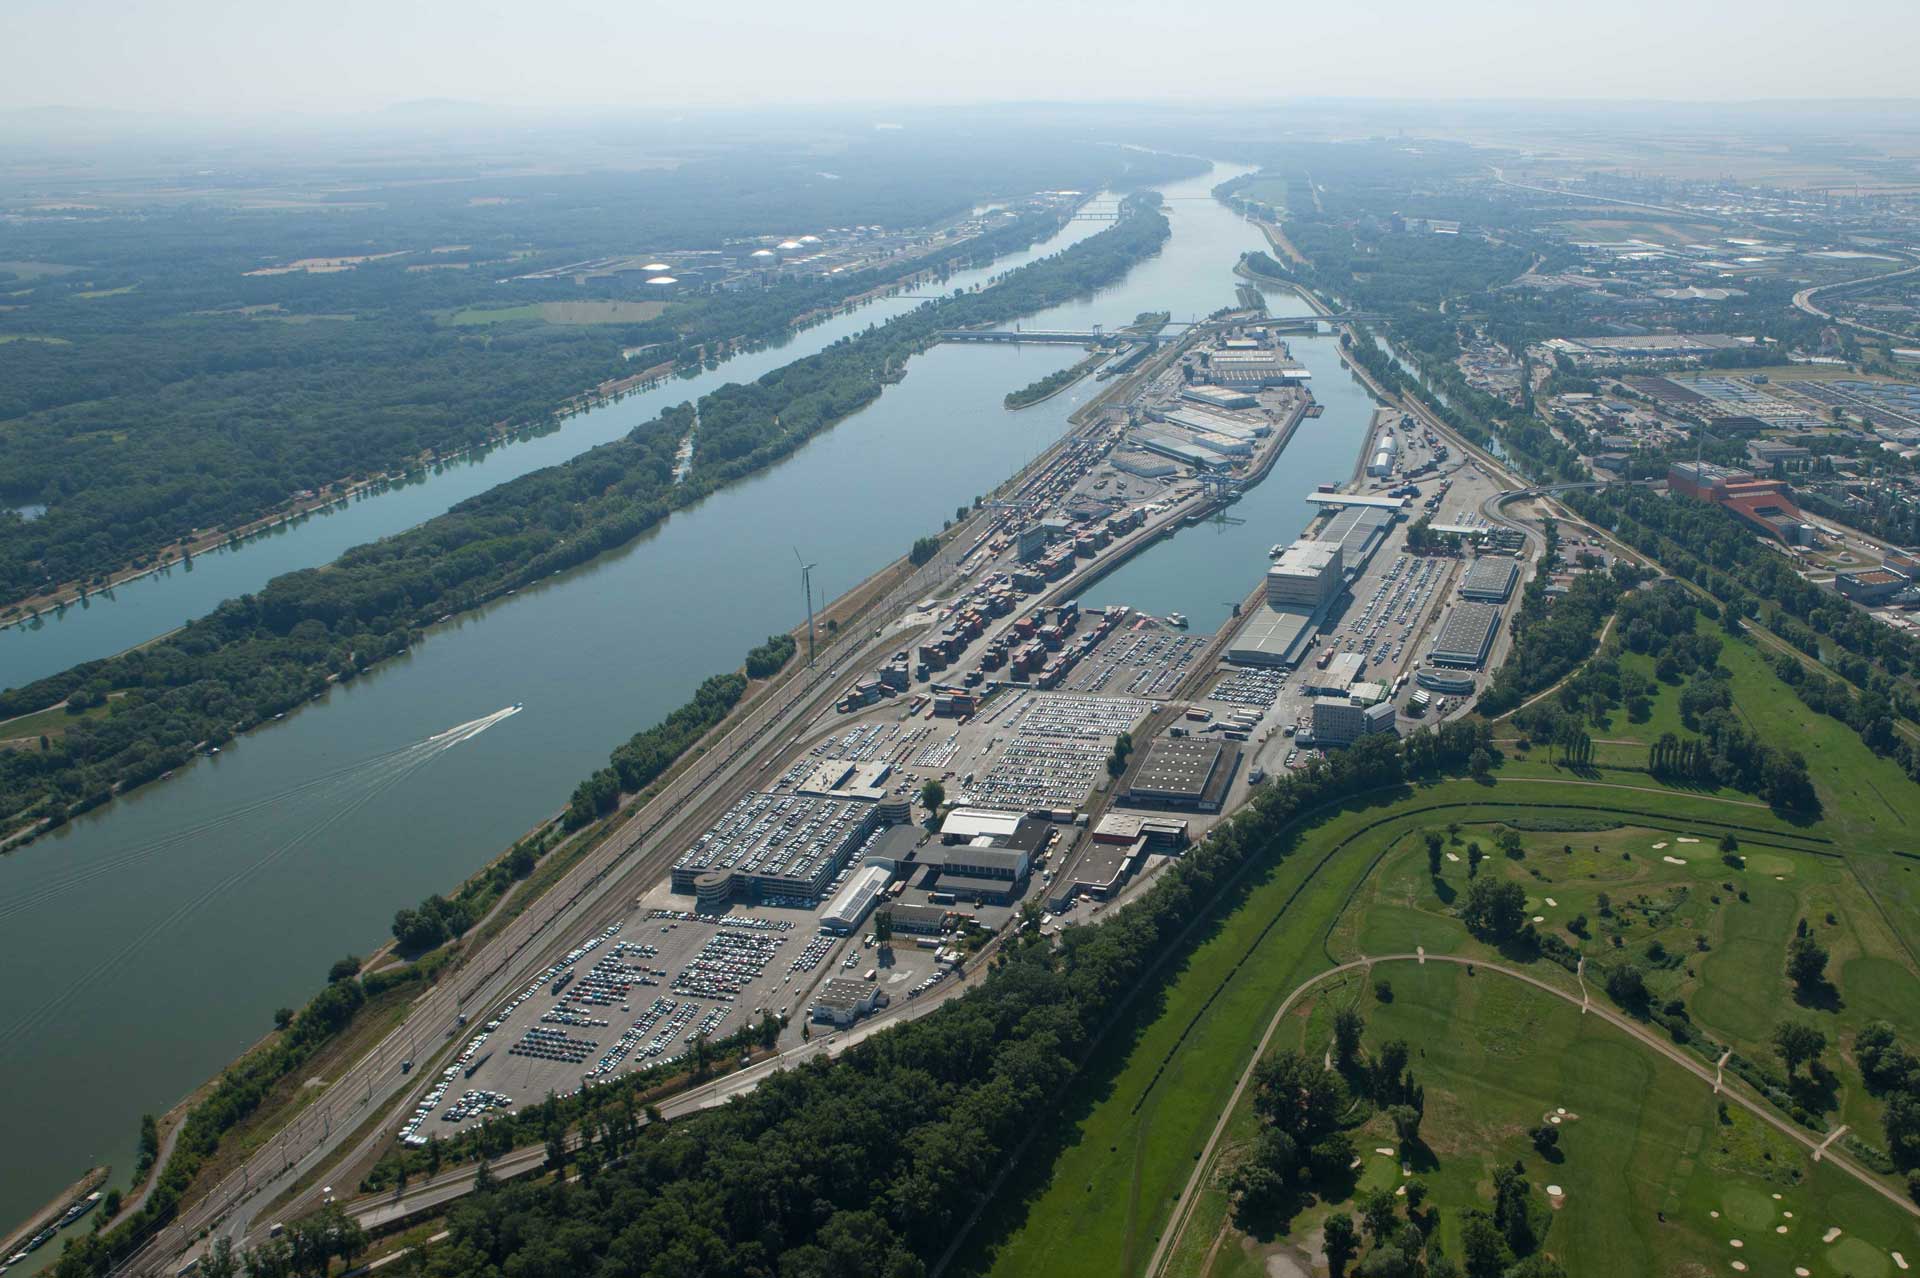 Hafen Wien GmbH